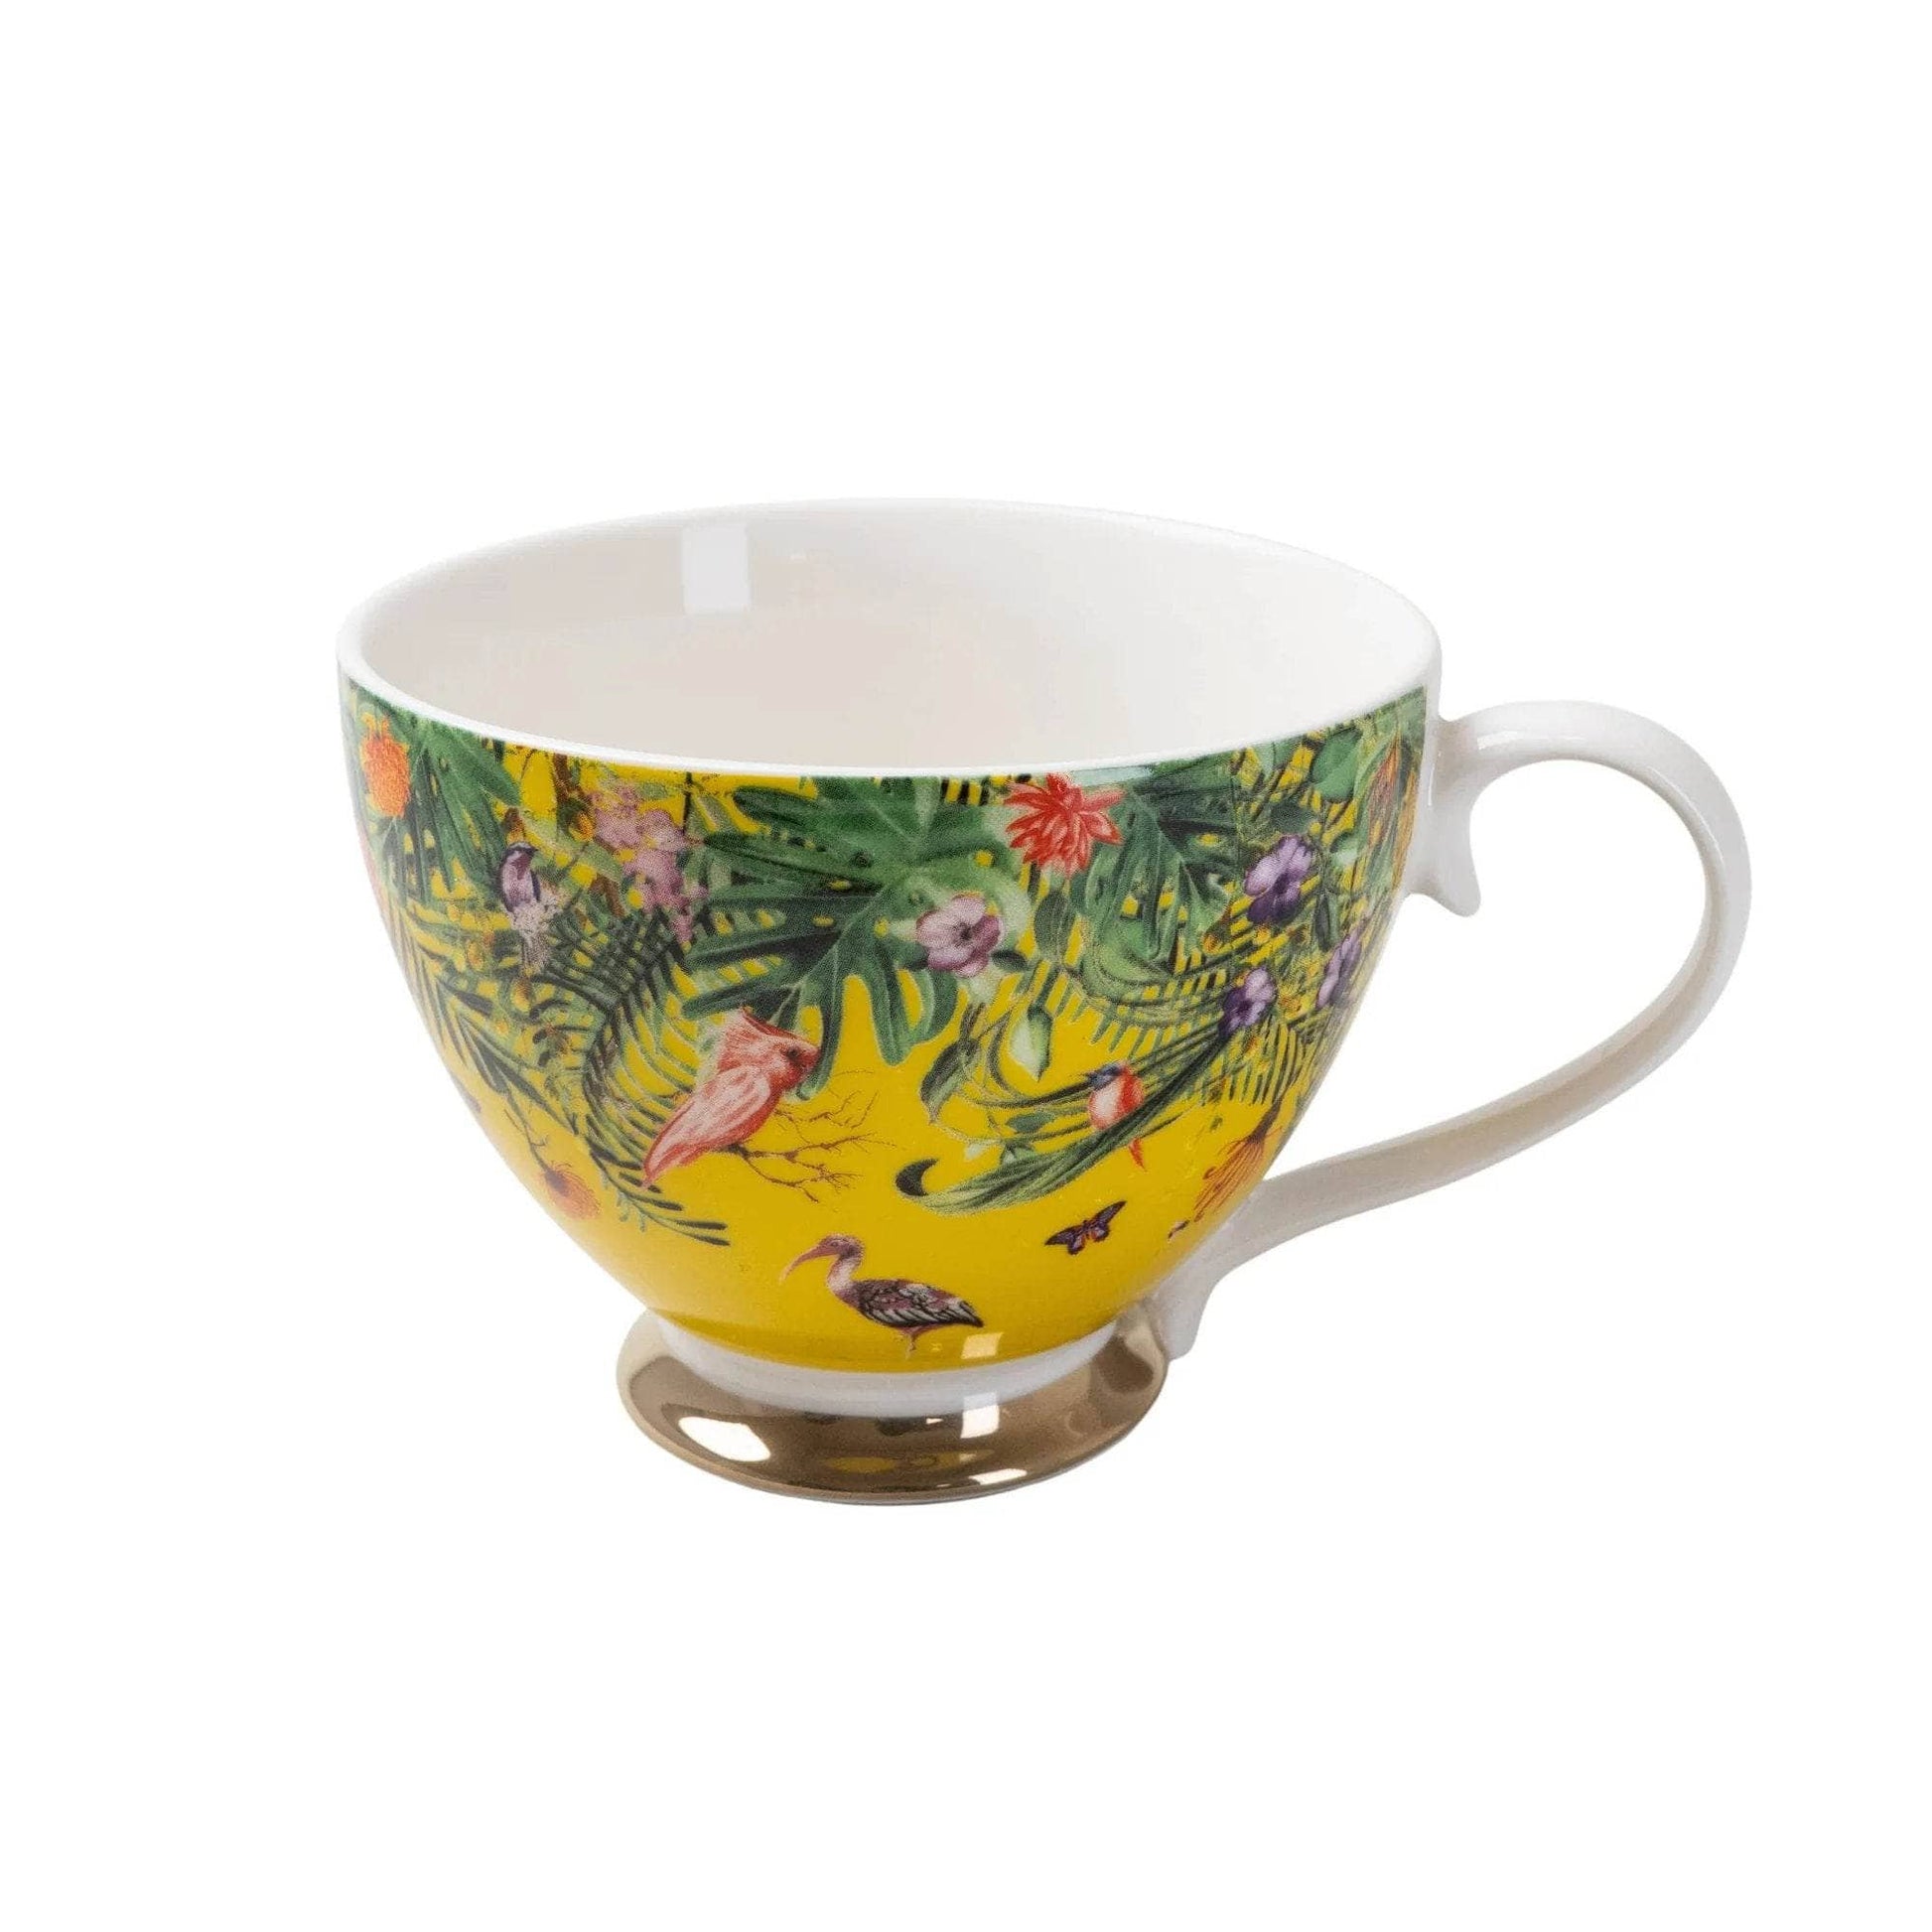  -  Yellow Floral Mug  -  60005319